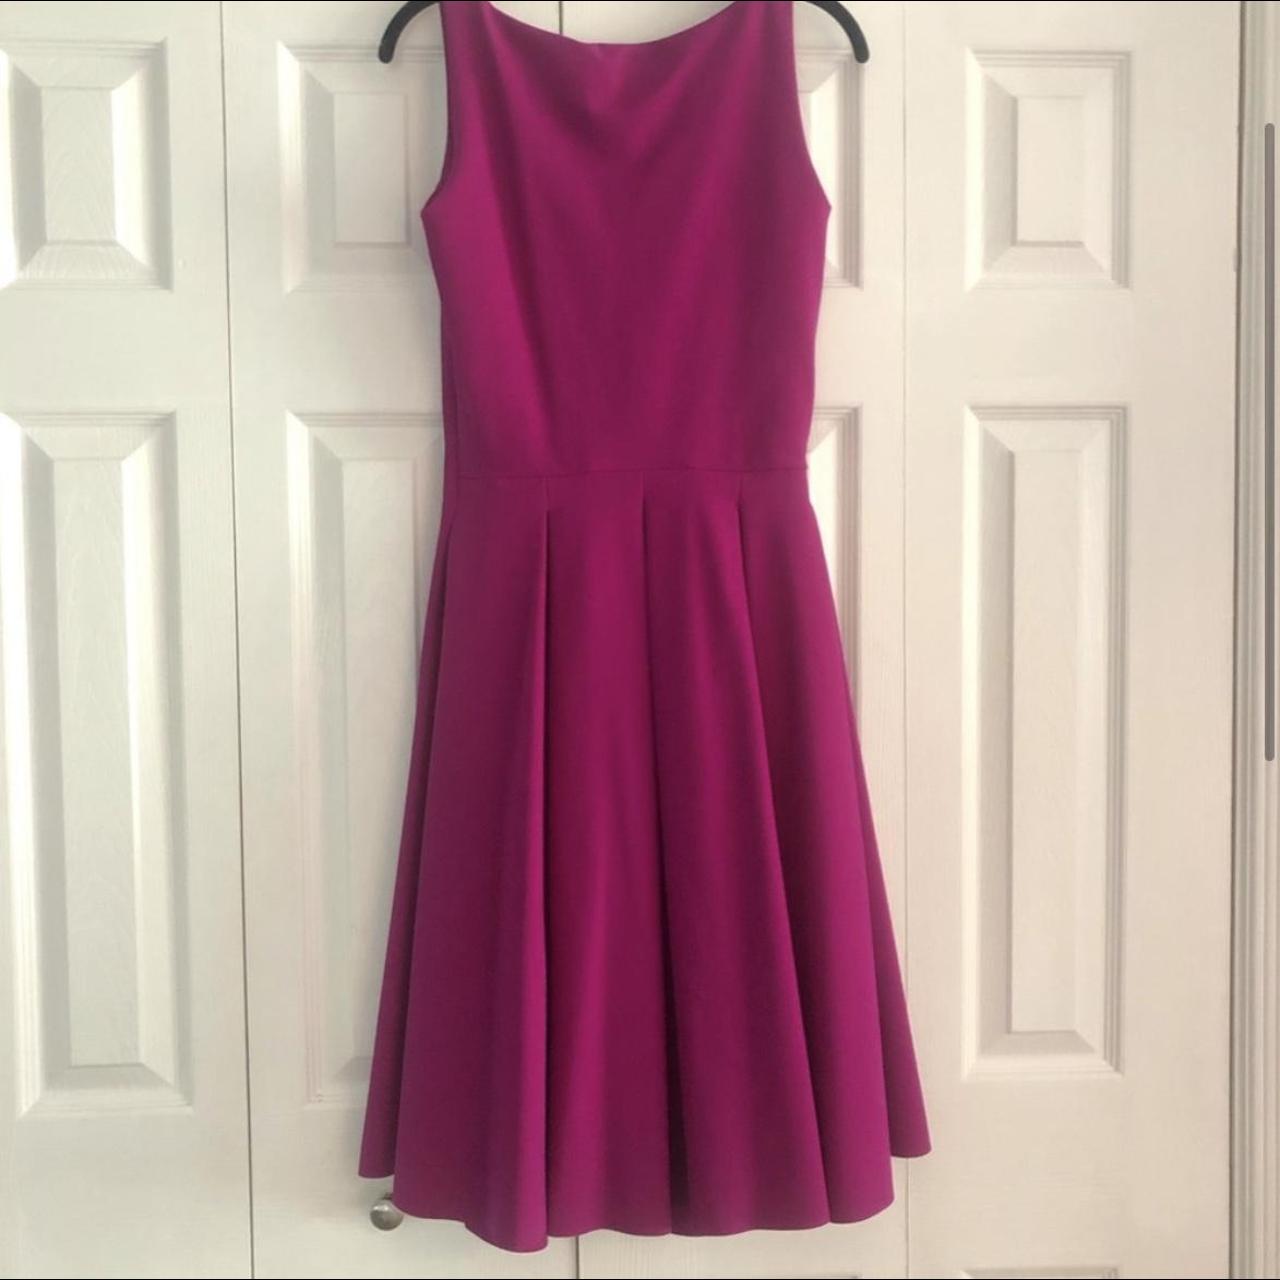 Chiara Boni La Petite Robe Women's Pink Dress (3)